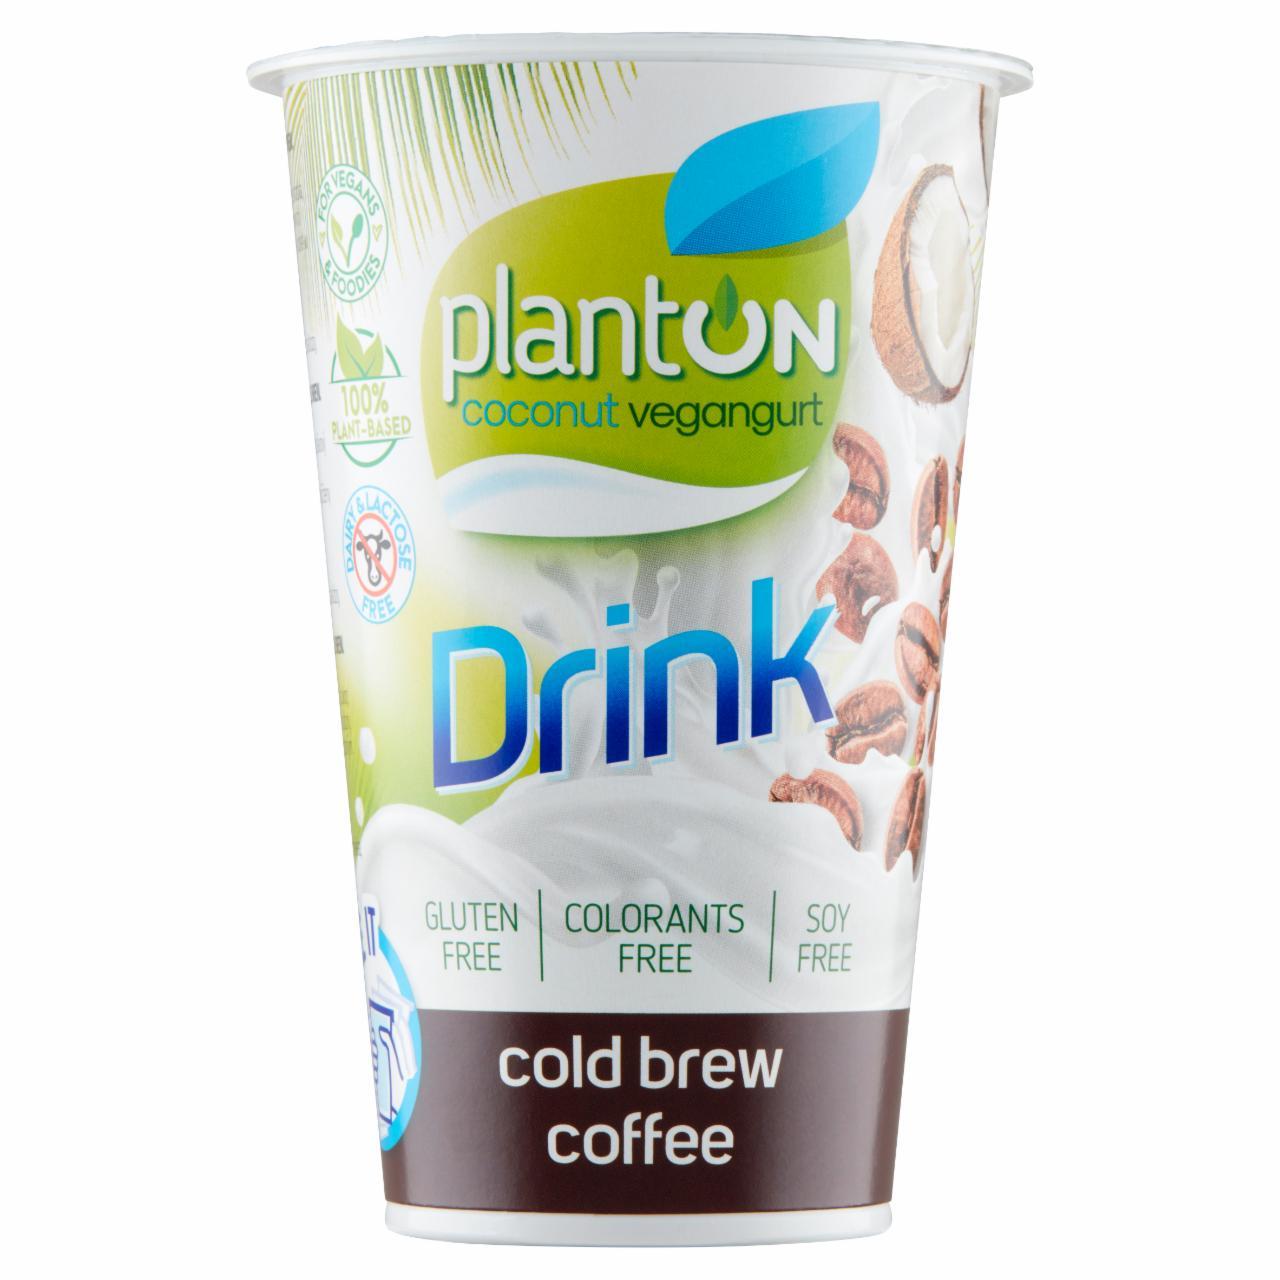 Zdjęcia - Planton Kokosowy vegangurt kawa cold brew 200 g